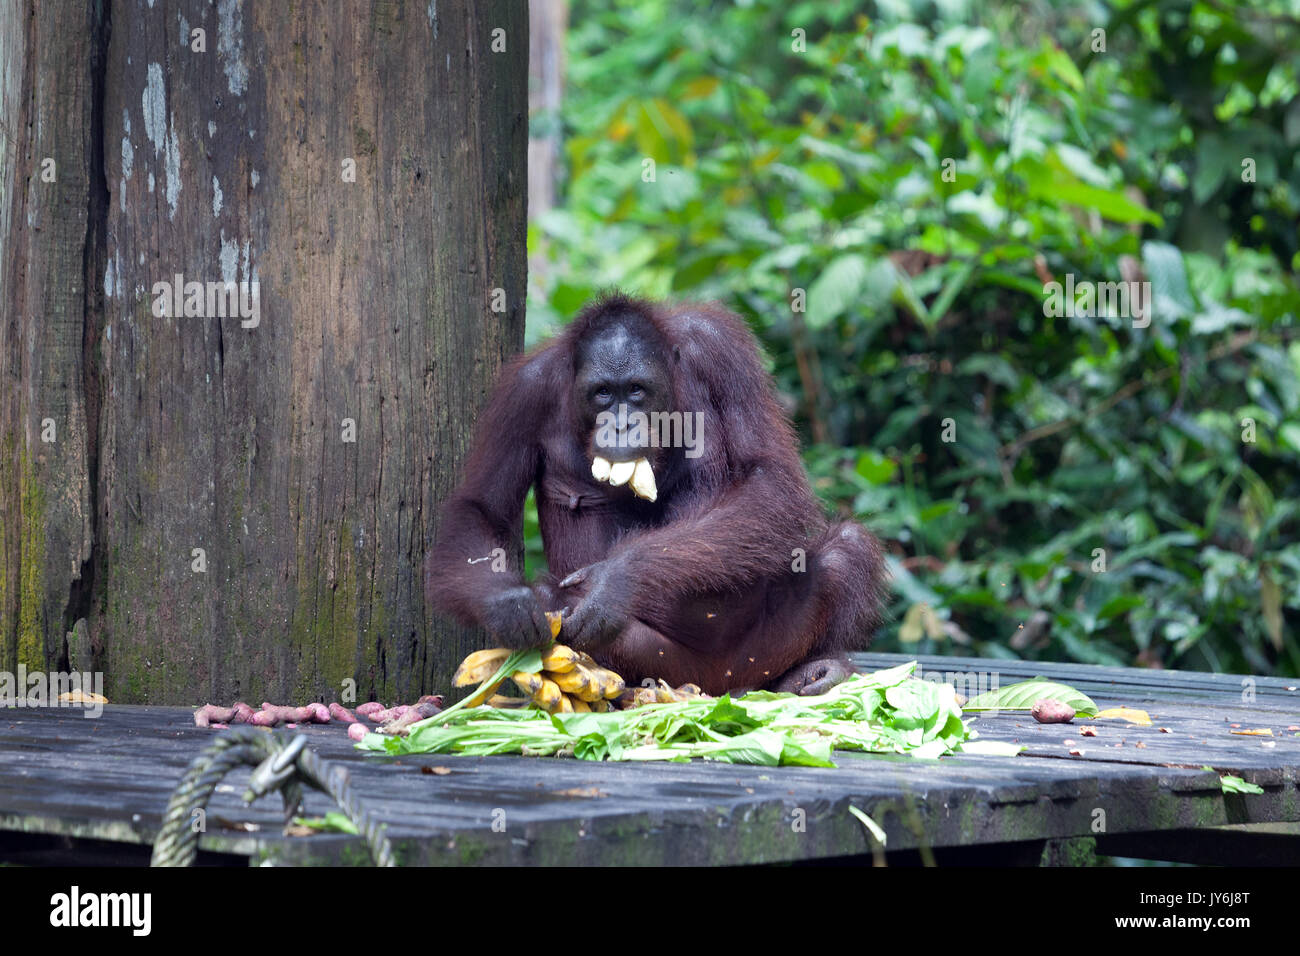 Orangutan eating bananas at Sepilok Orangutan Rehabilitation Centre, Sabah, Malaysia Stock Photo